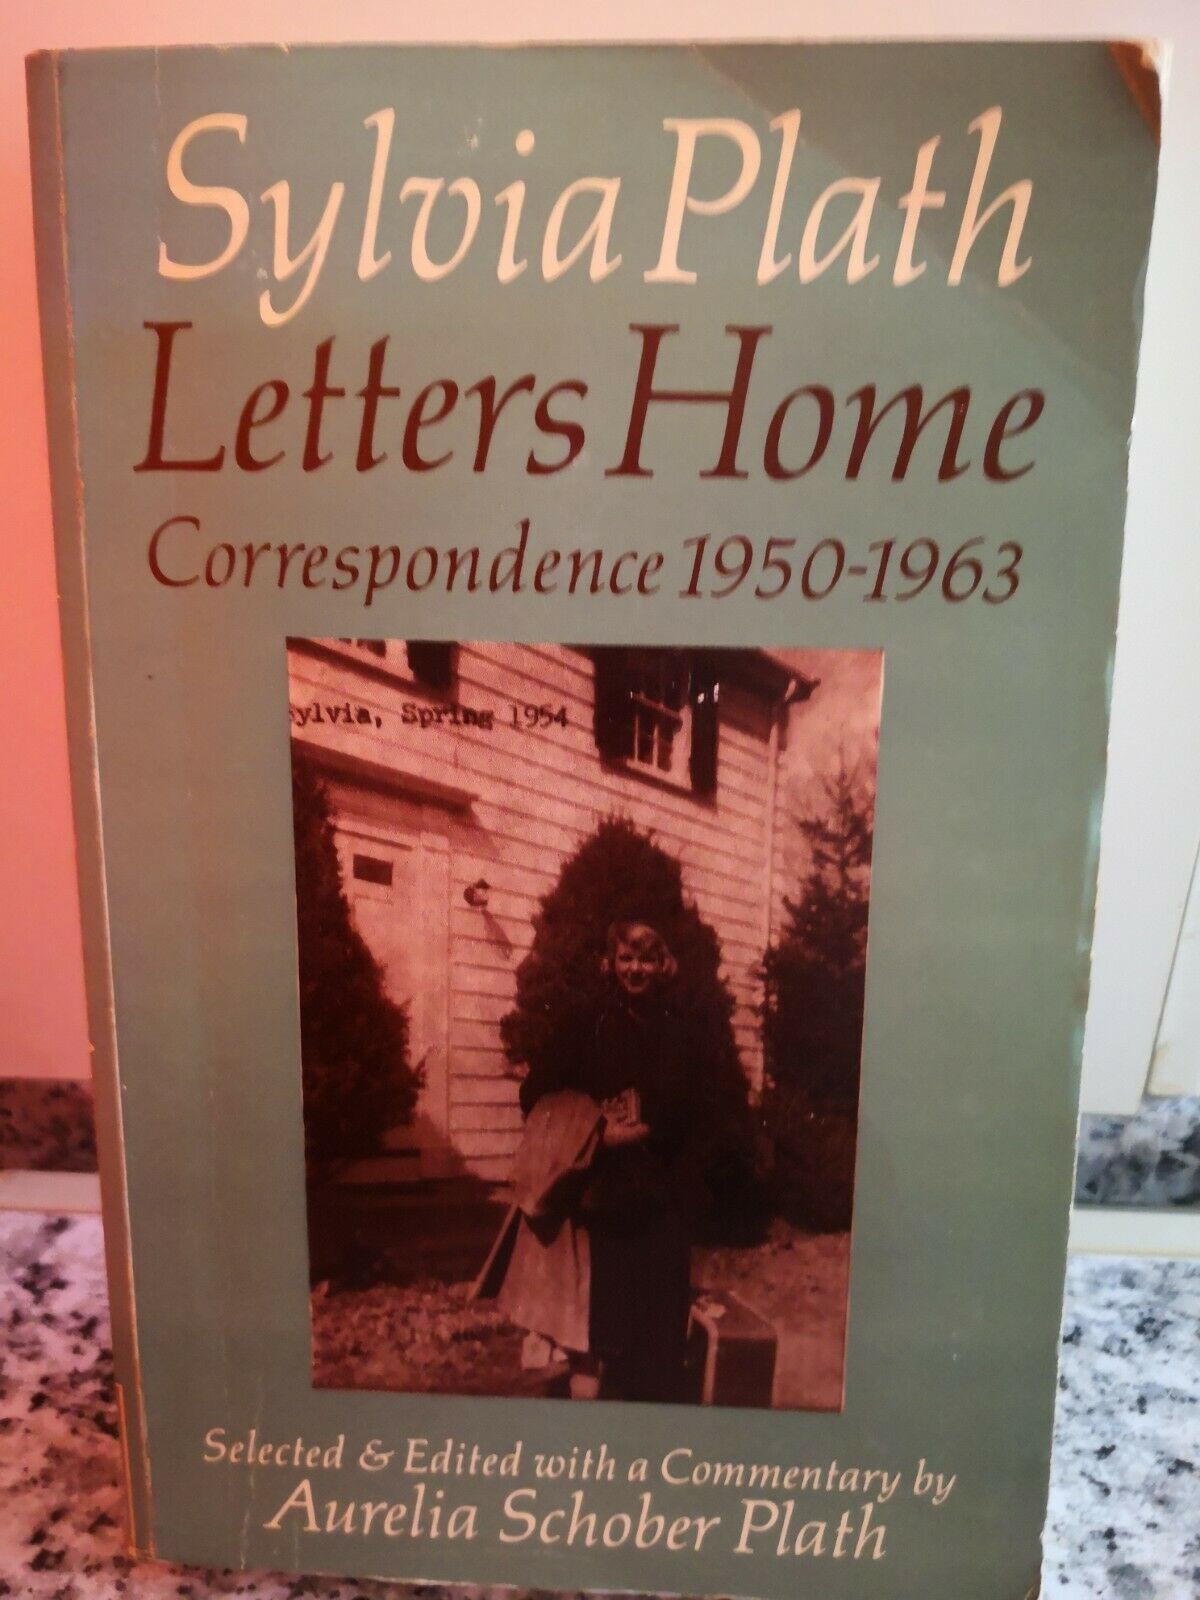  Letters Home Correspondence 1950-1963  di Sylvia Plath,  1987,  -F